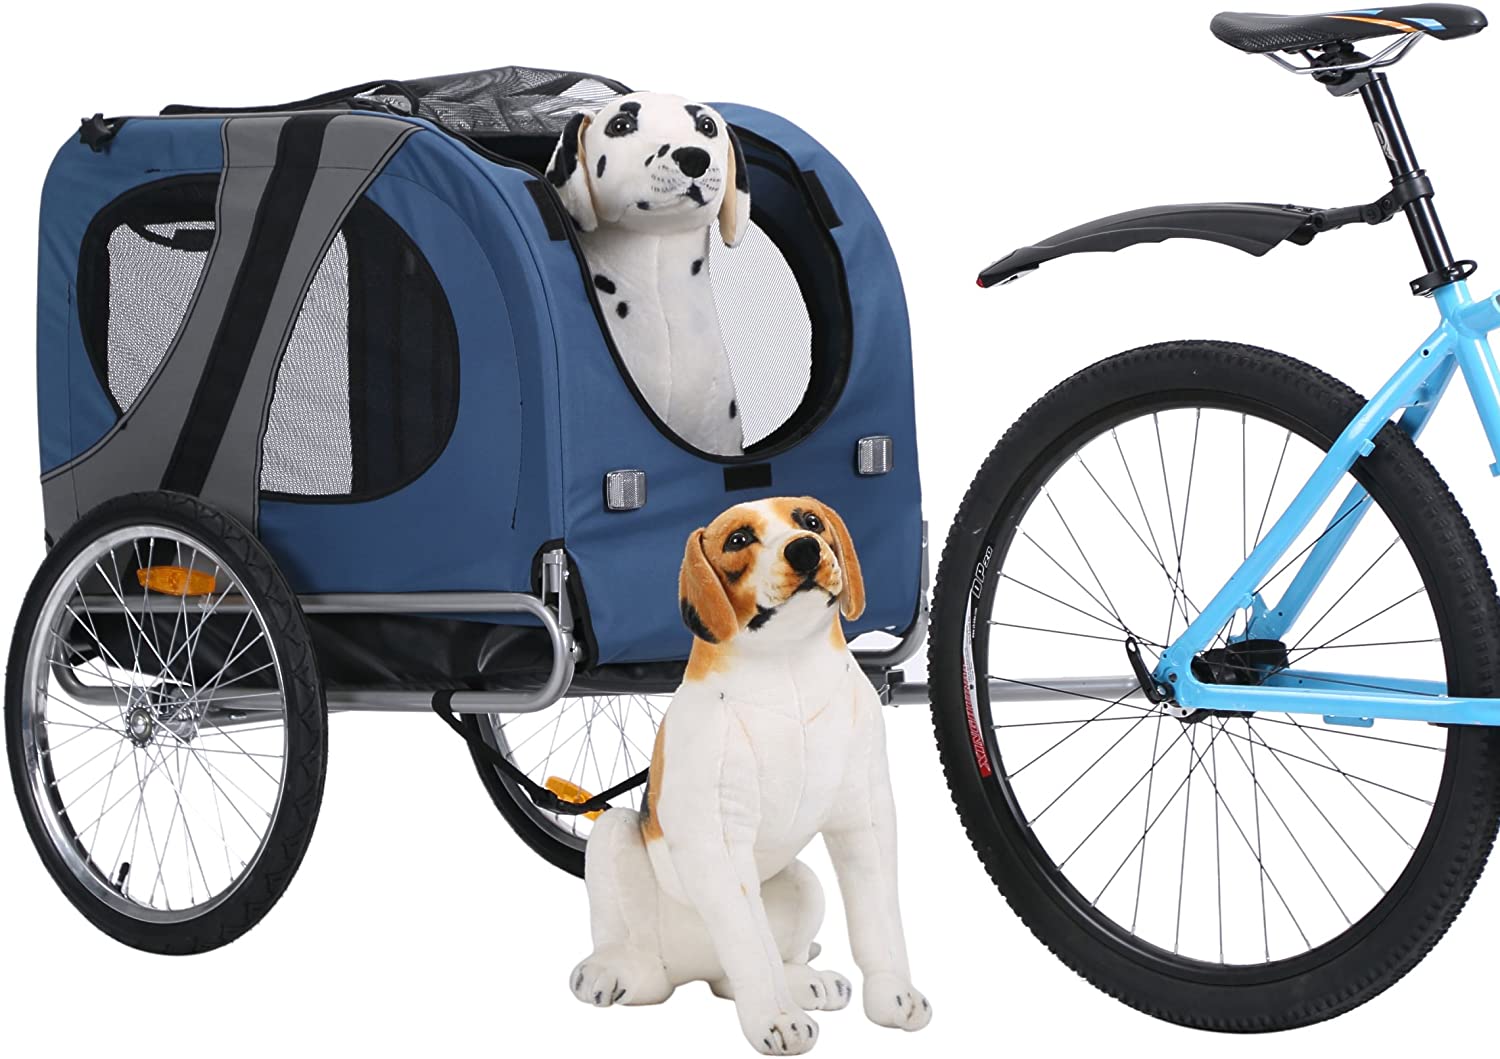  Leonpets mascotas Remolque de bicicleta Perros Carro Transporter con acoplamiento universal azul nuevo 10117 